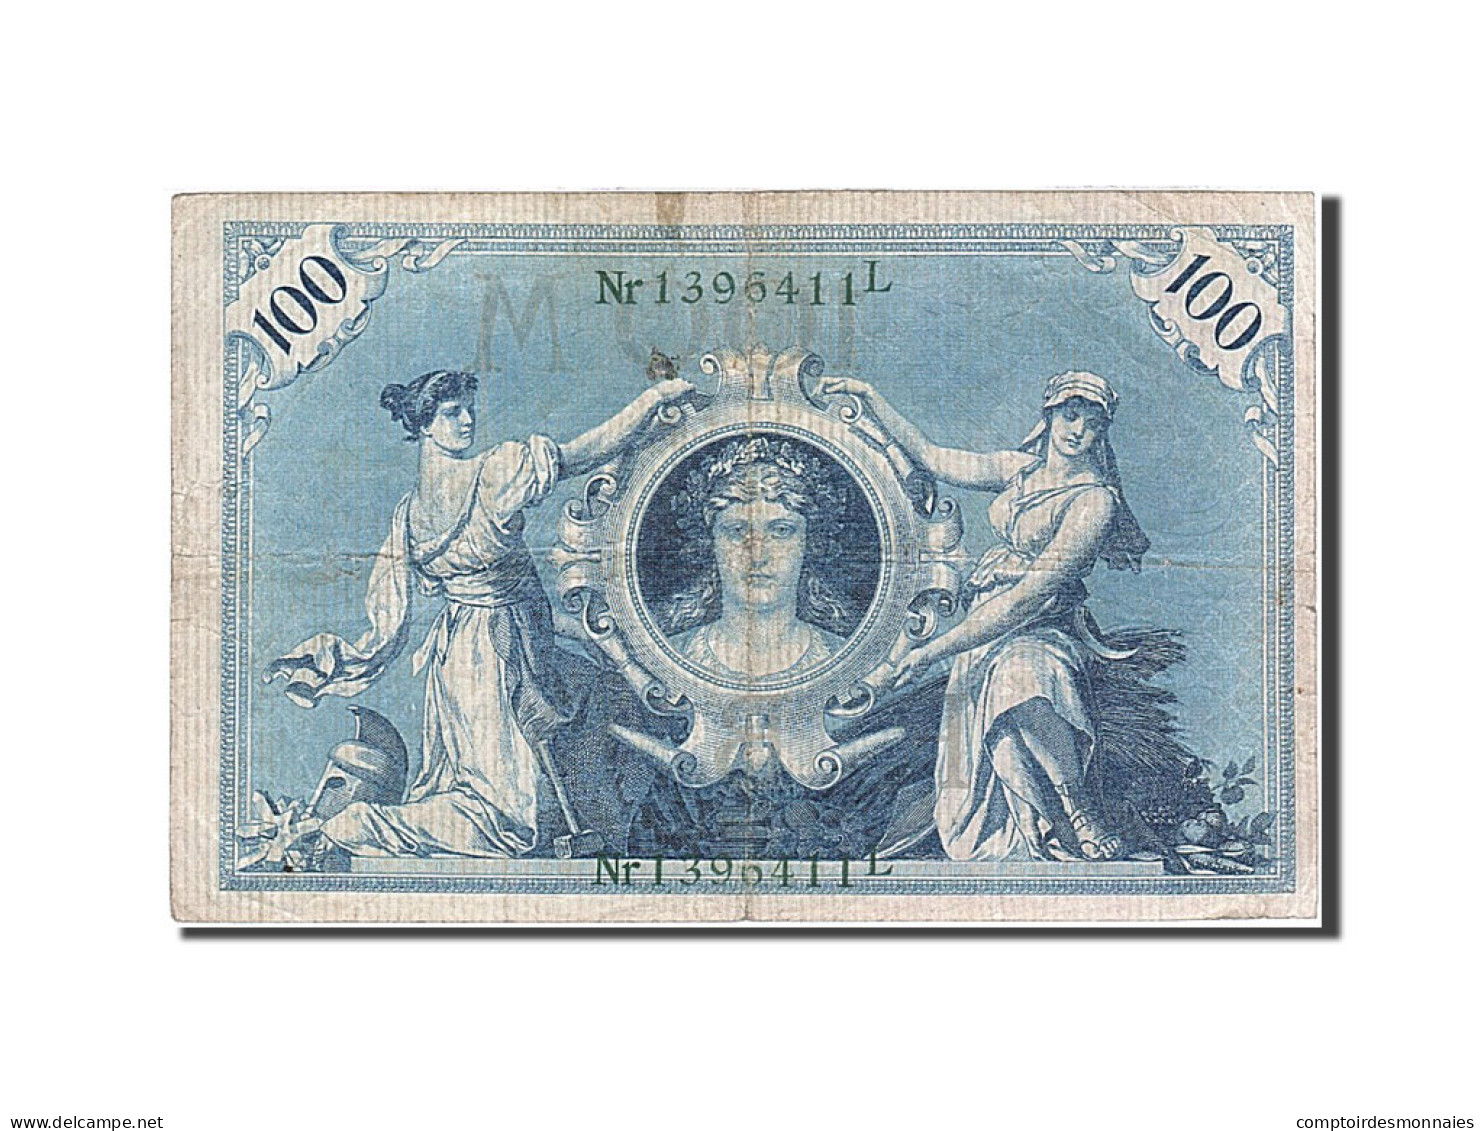 Billet, Allemagne, 100 Mark, 1908, 1908-02-07, KM:34, TB - 100 Mark